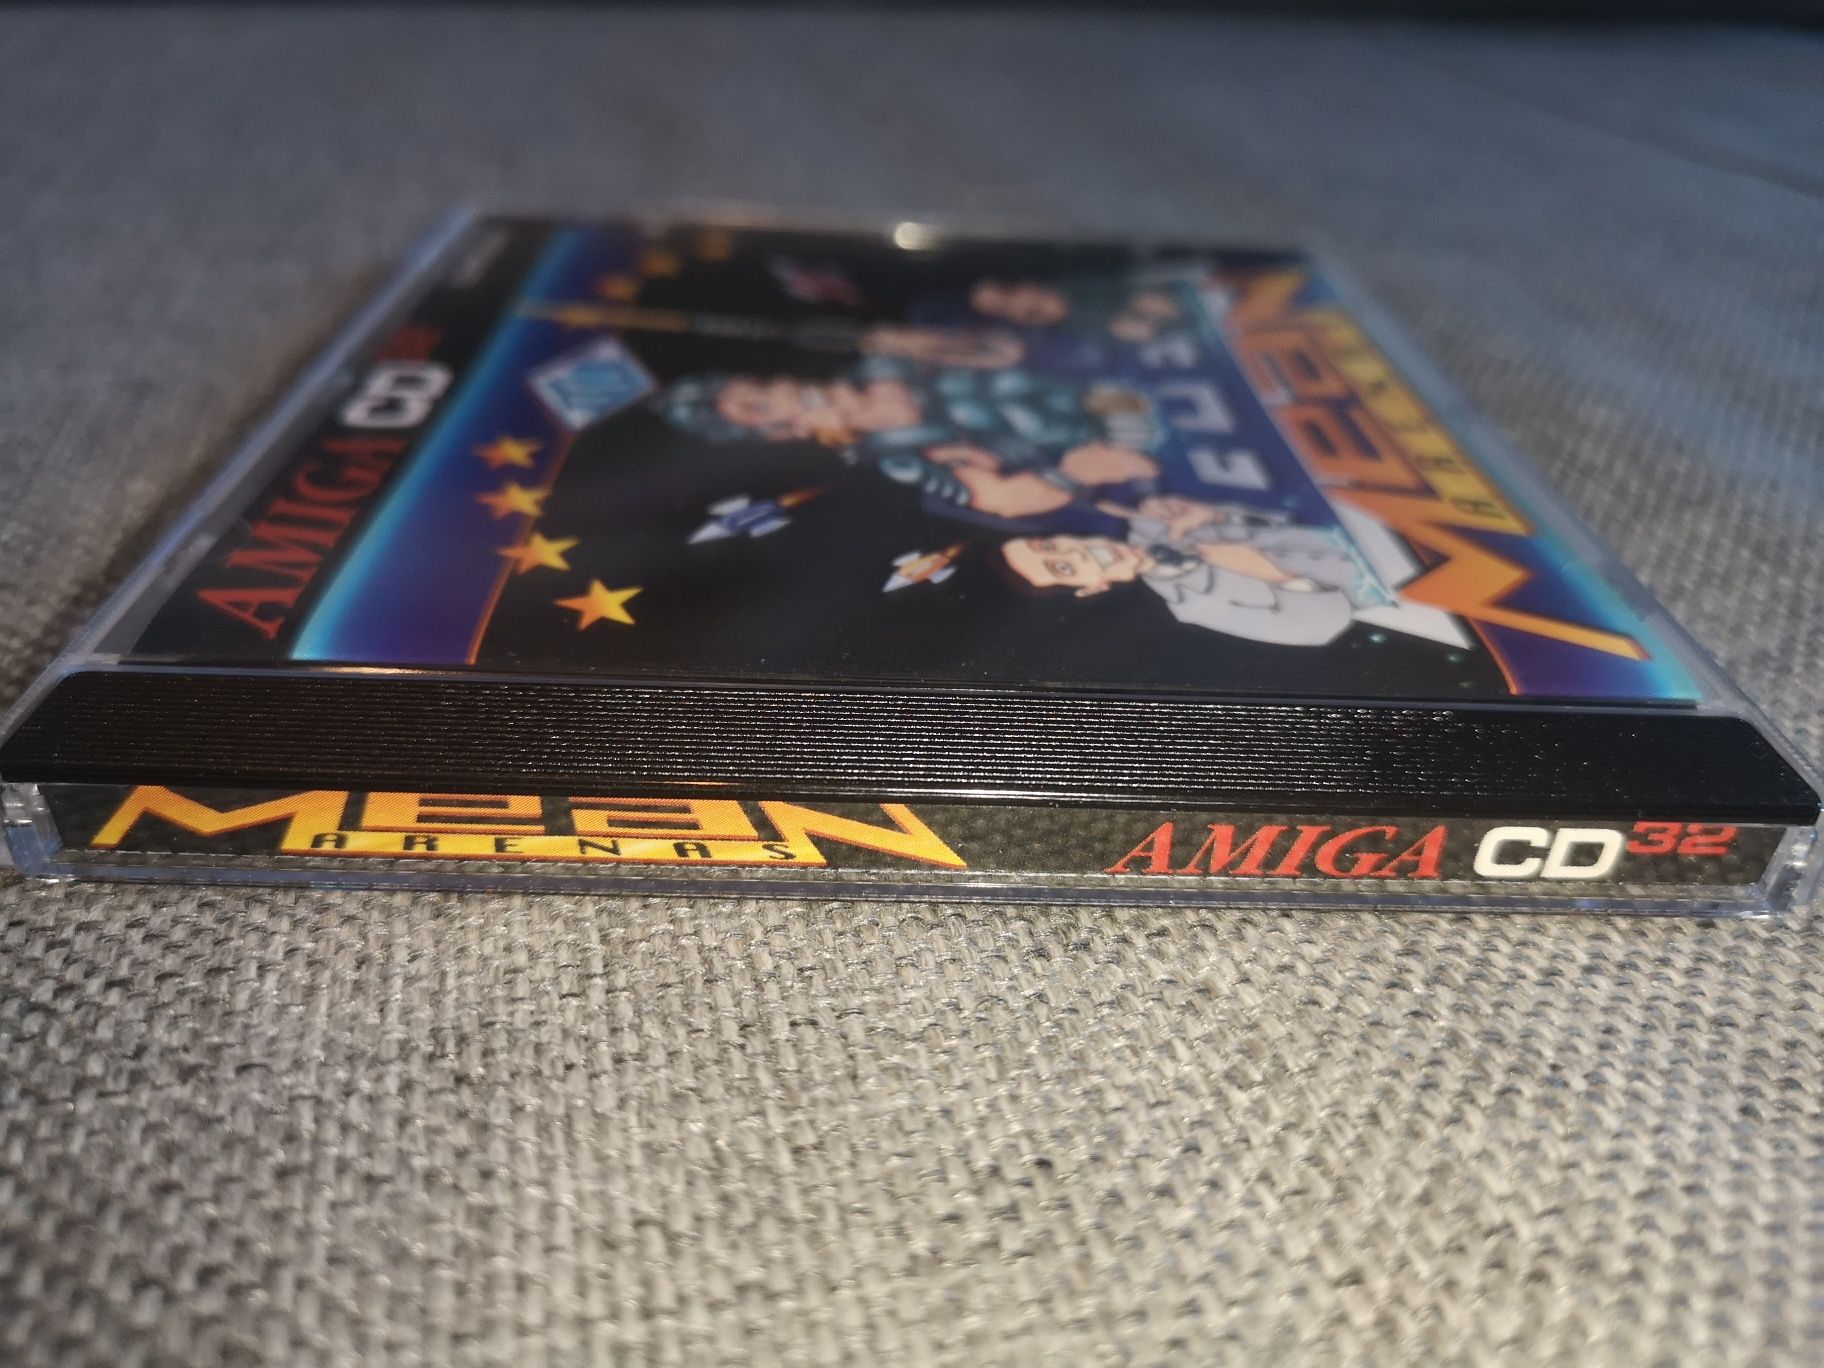 Mean Arenas AMIGA CD32 gra (stan kolekcjonerski) kioskzgrami